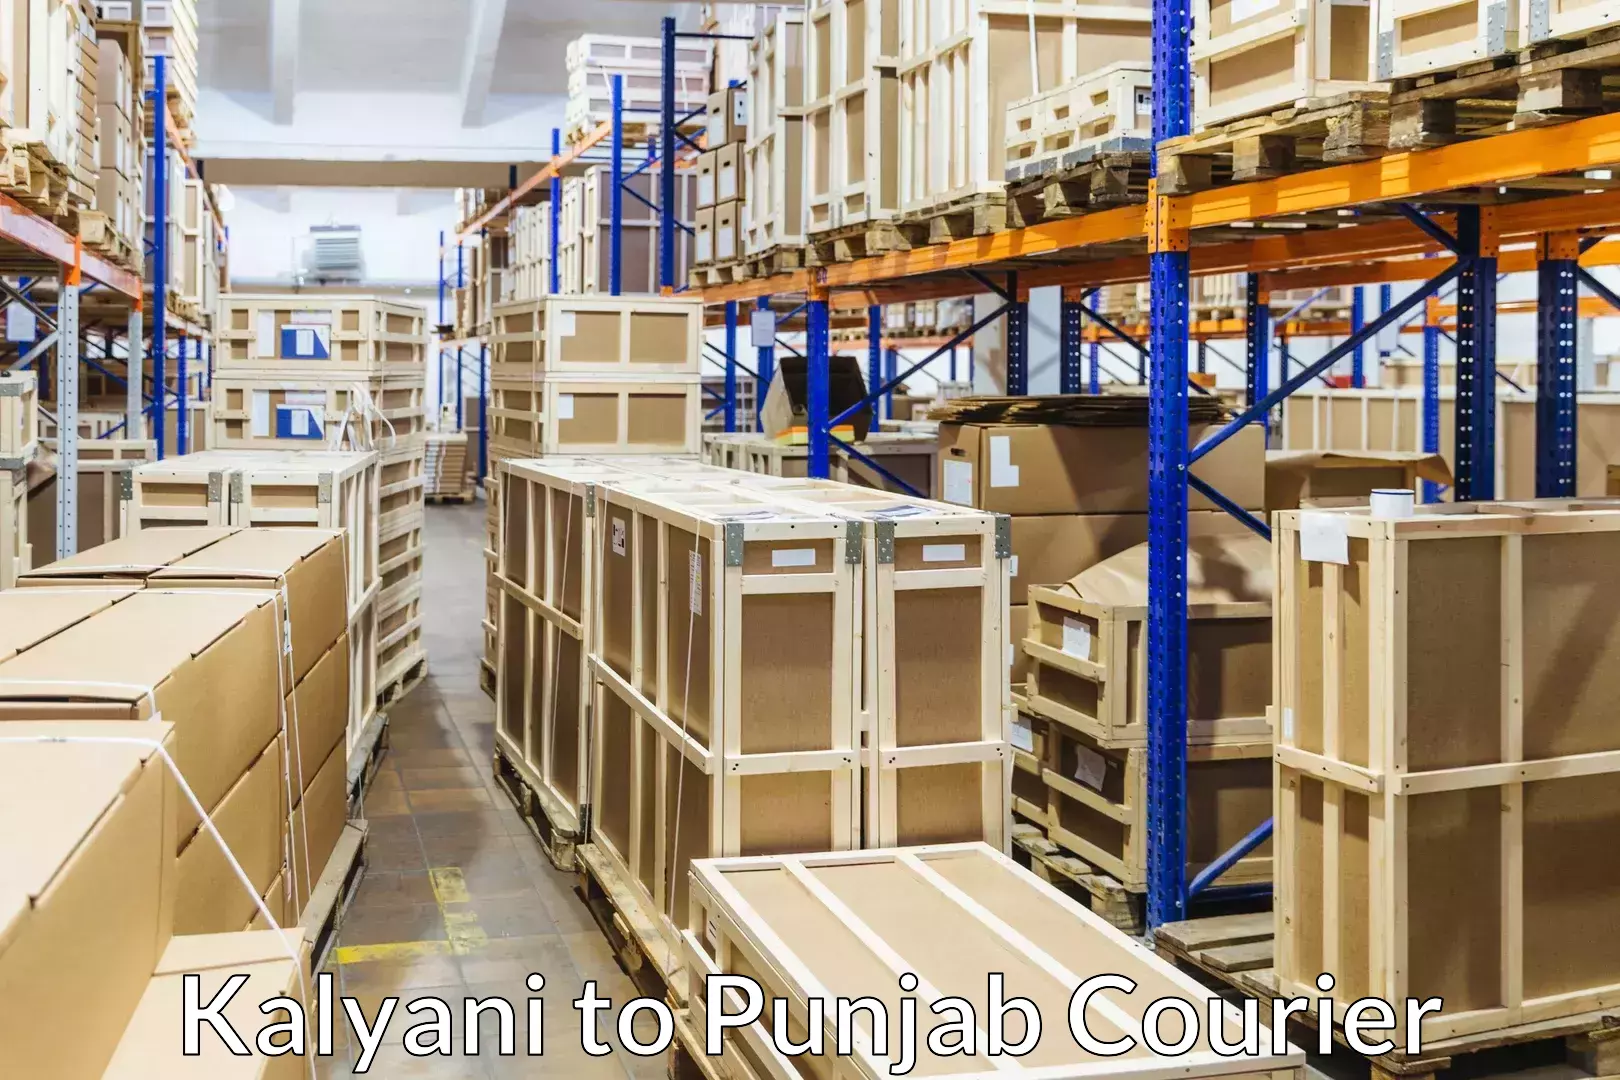 Efficient packing and moving Kalyani to Punjab